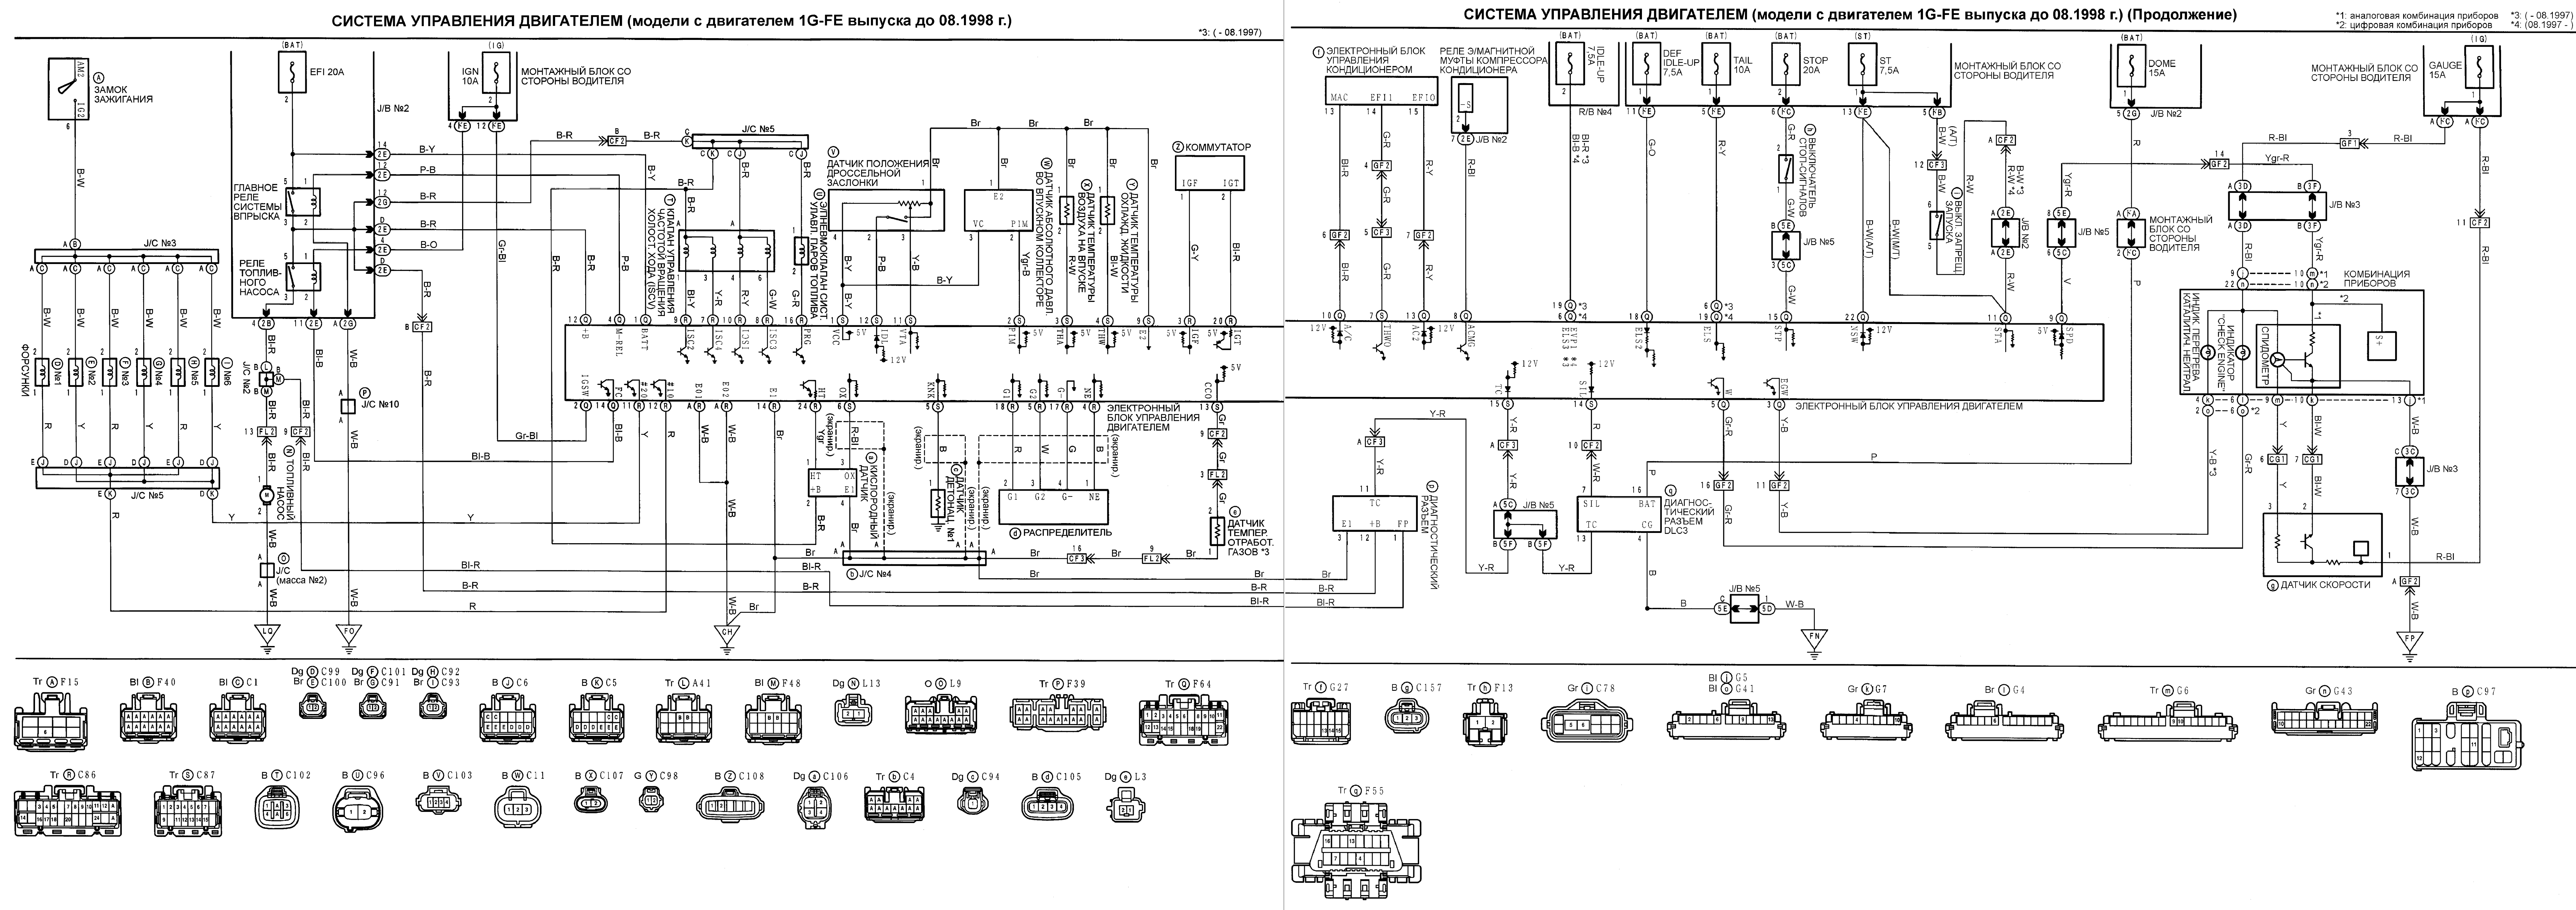 Система управления двигателем 1g-Fe 1998